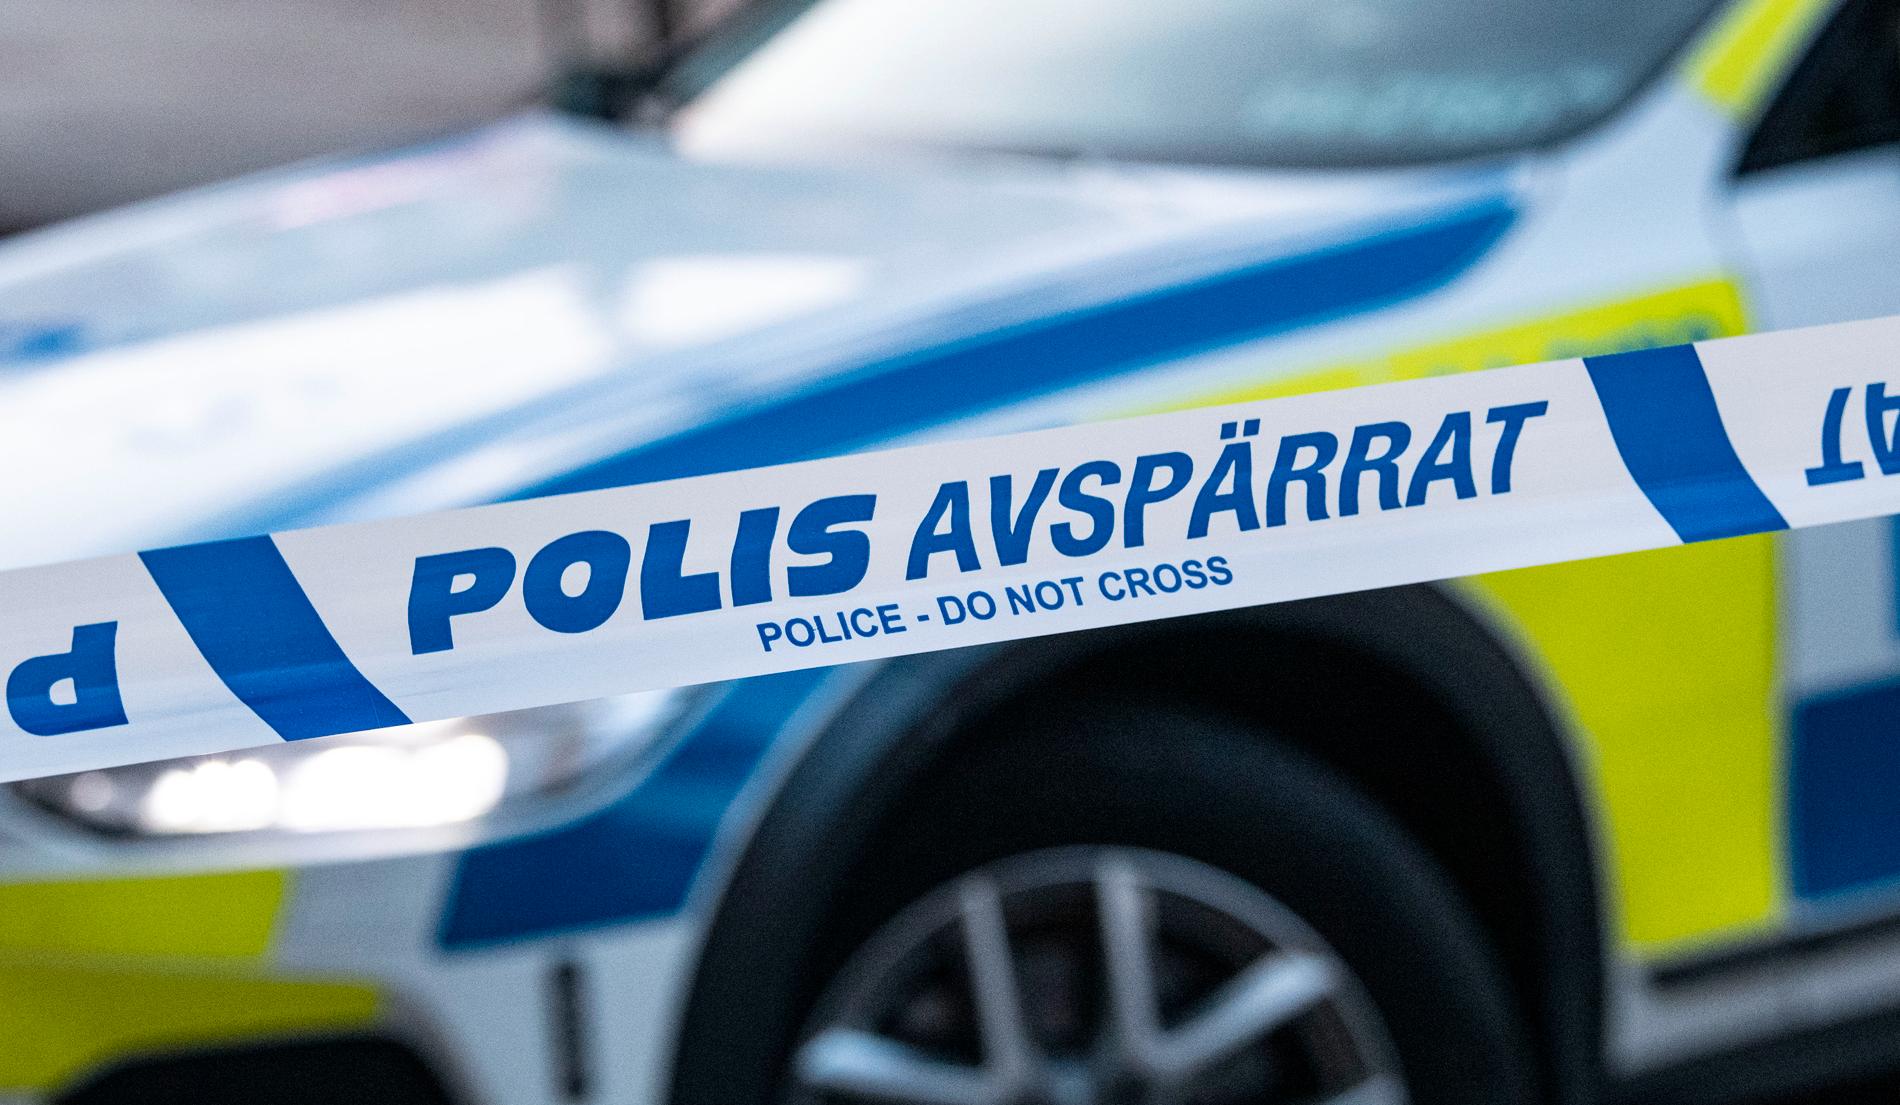 En misstänkt man förhördes av polisen efter larm om att en person riktat ett gevär mot en moské i Kista i norra Stockholm. Arkivbild.